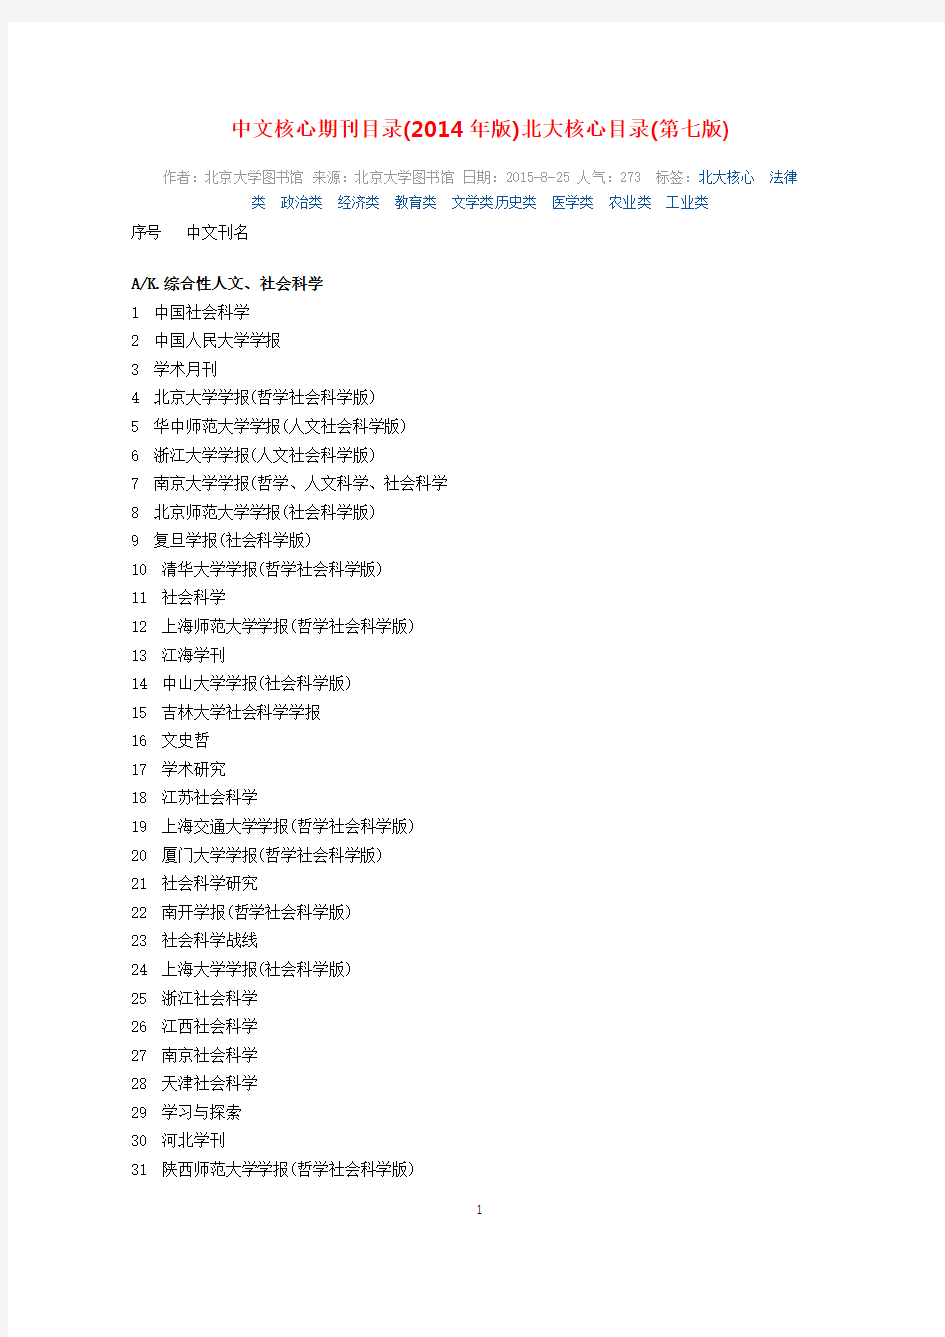 第七版《中文核心期刊要目总览》官方正式公布